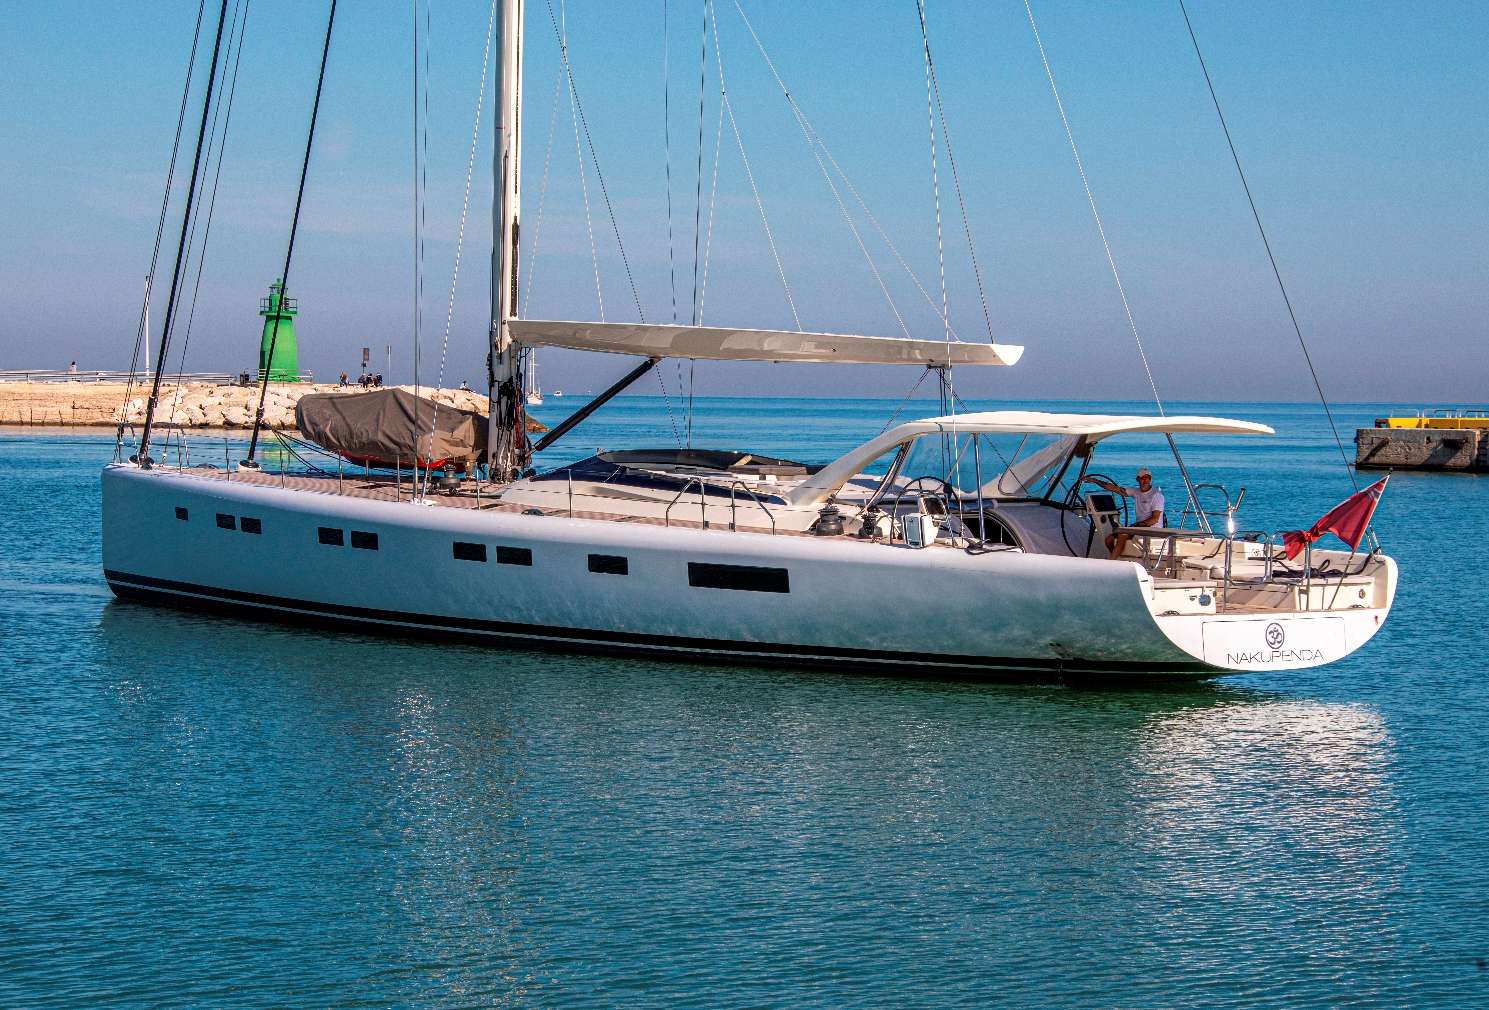 nakupenda - Yacht Charter Cannes & Boat hire in Fr. Riviera & Tyrrhenian Sea 1